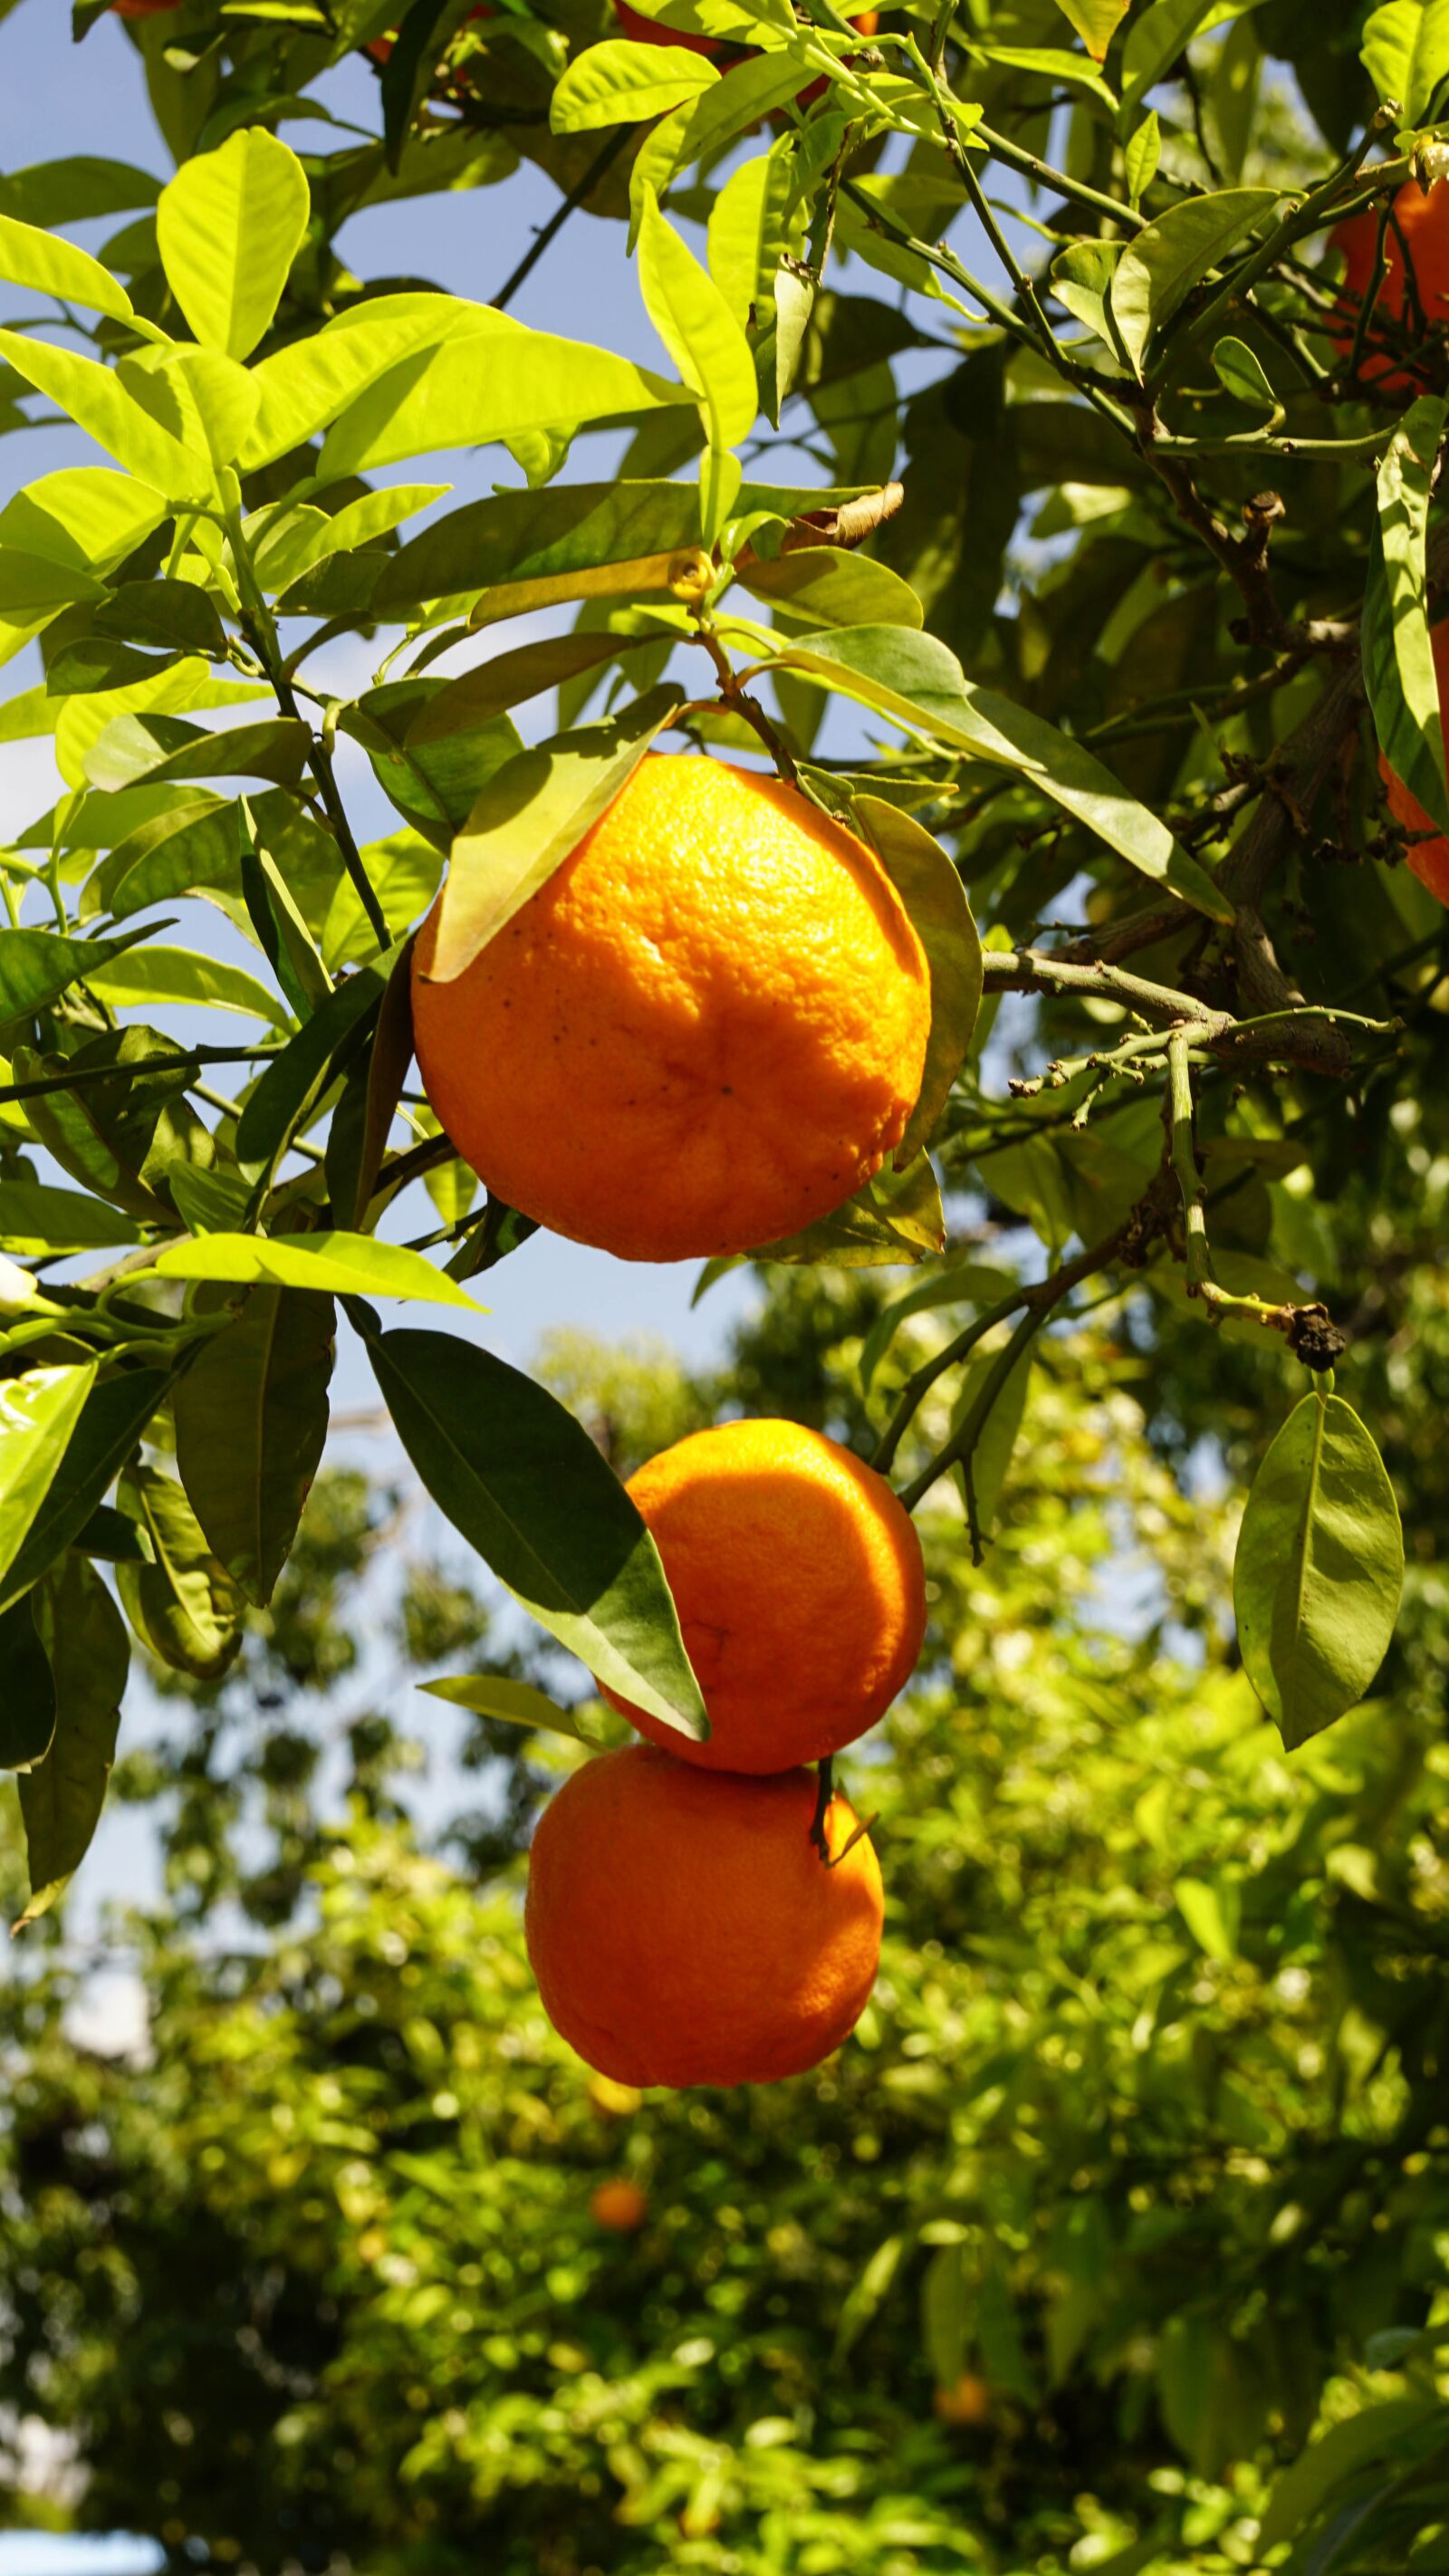 Sony Vario-Tessar T* E 16-70mm F4 ZA OSS sample photo. Oranges, tree, light photography